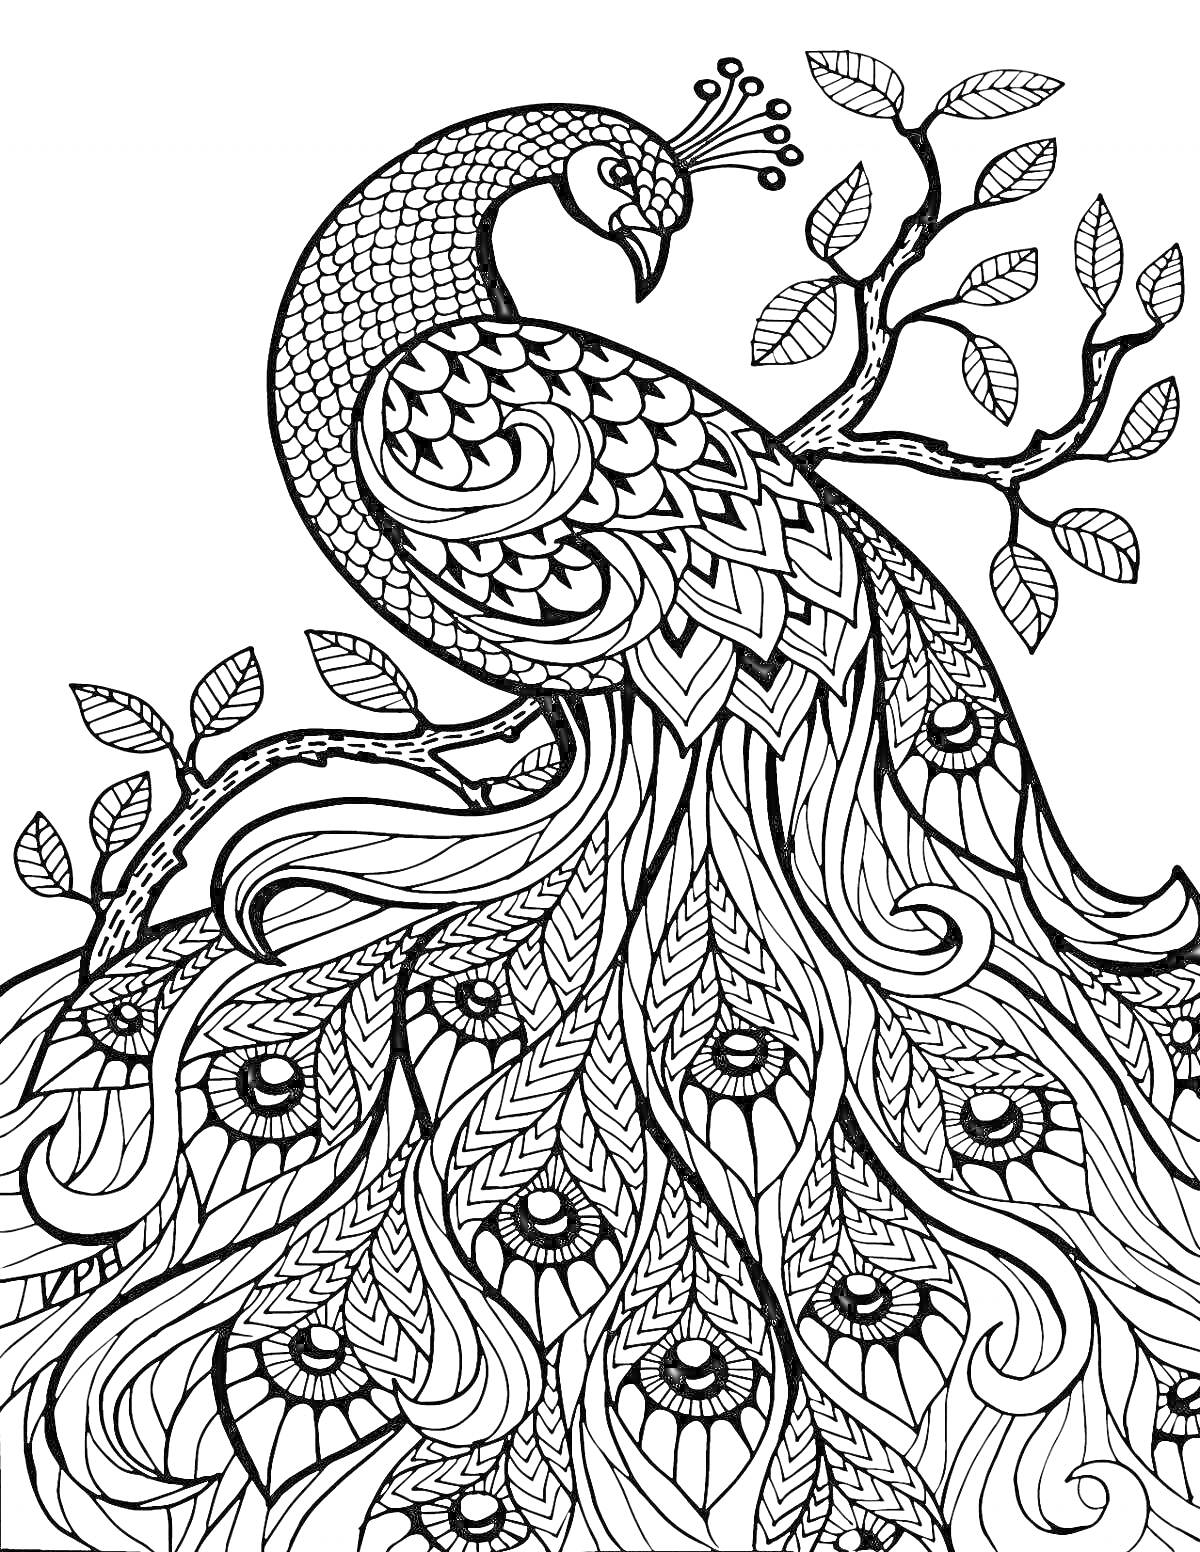 Раскраска Павлина дерево с изящными листьями и деталями хвоста